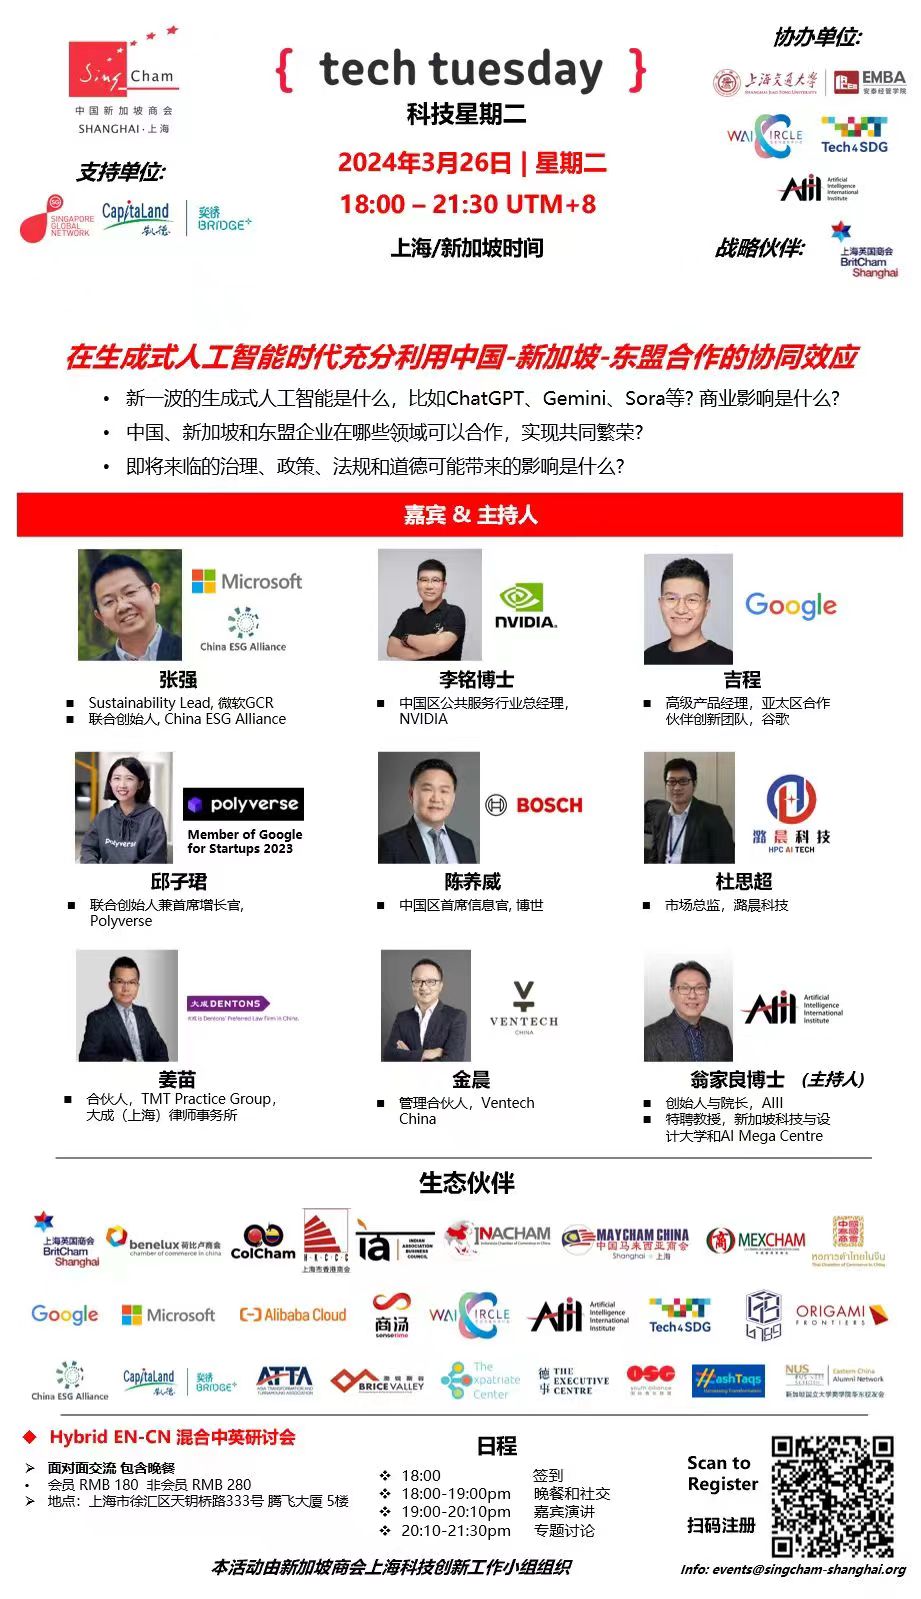 科技星期二在上海(邀请)